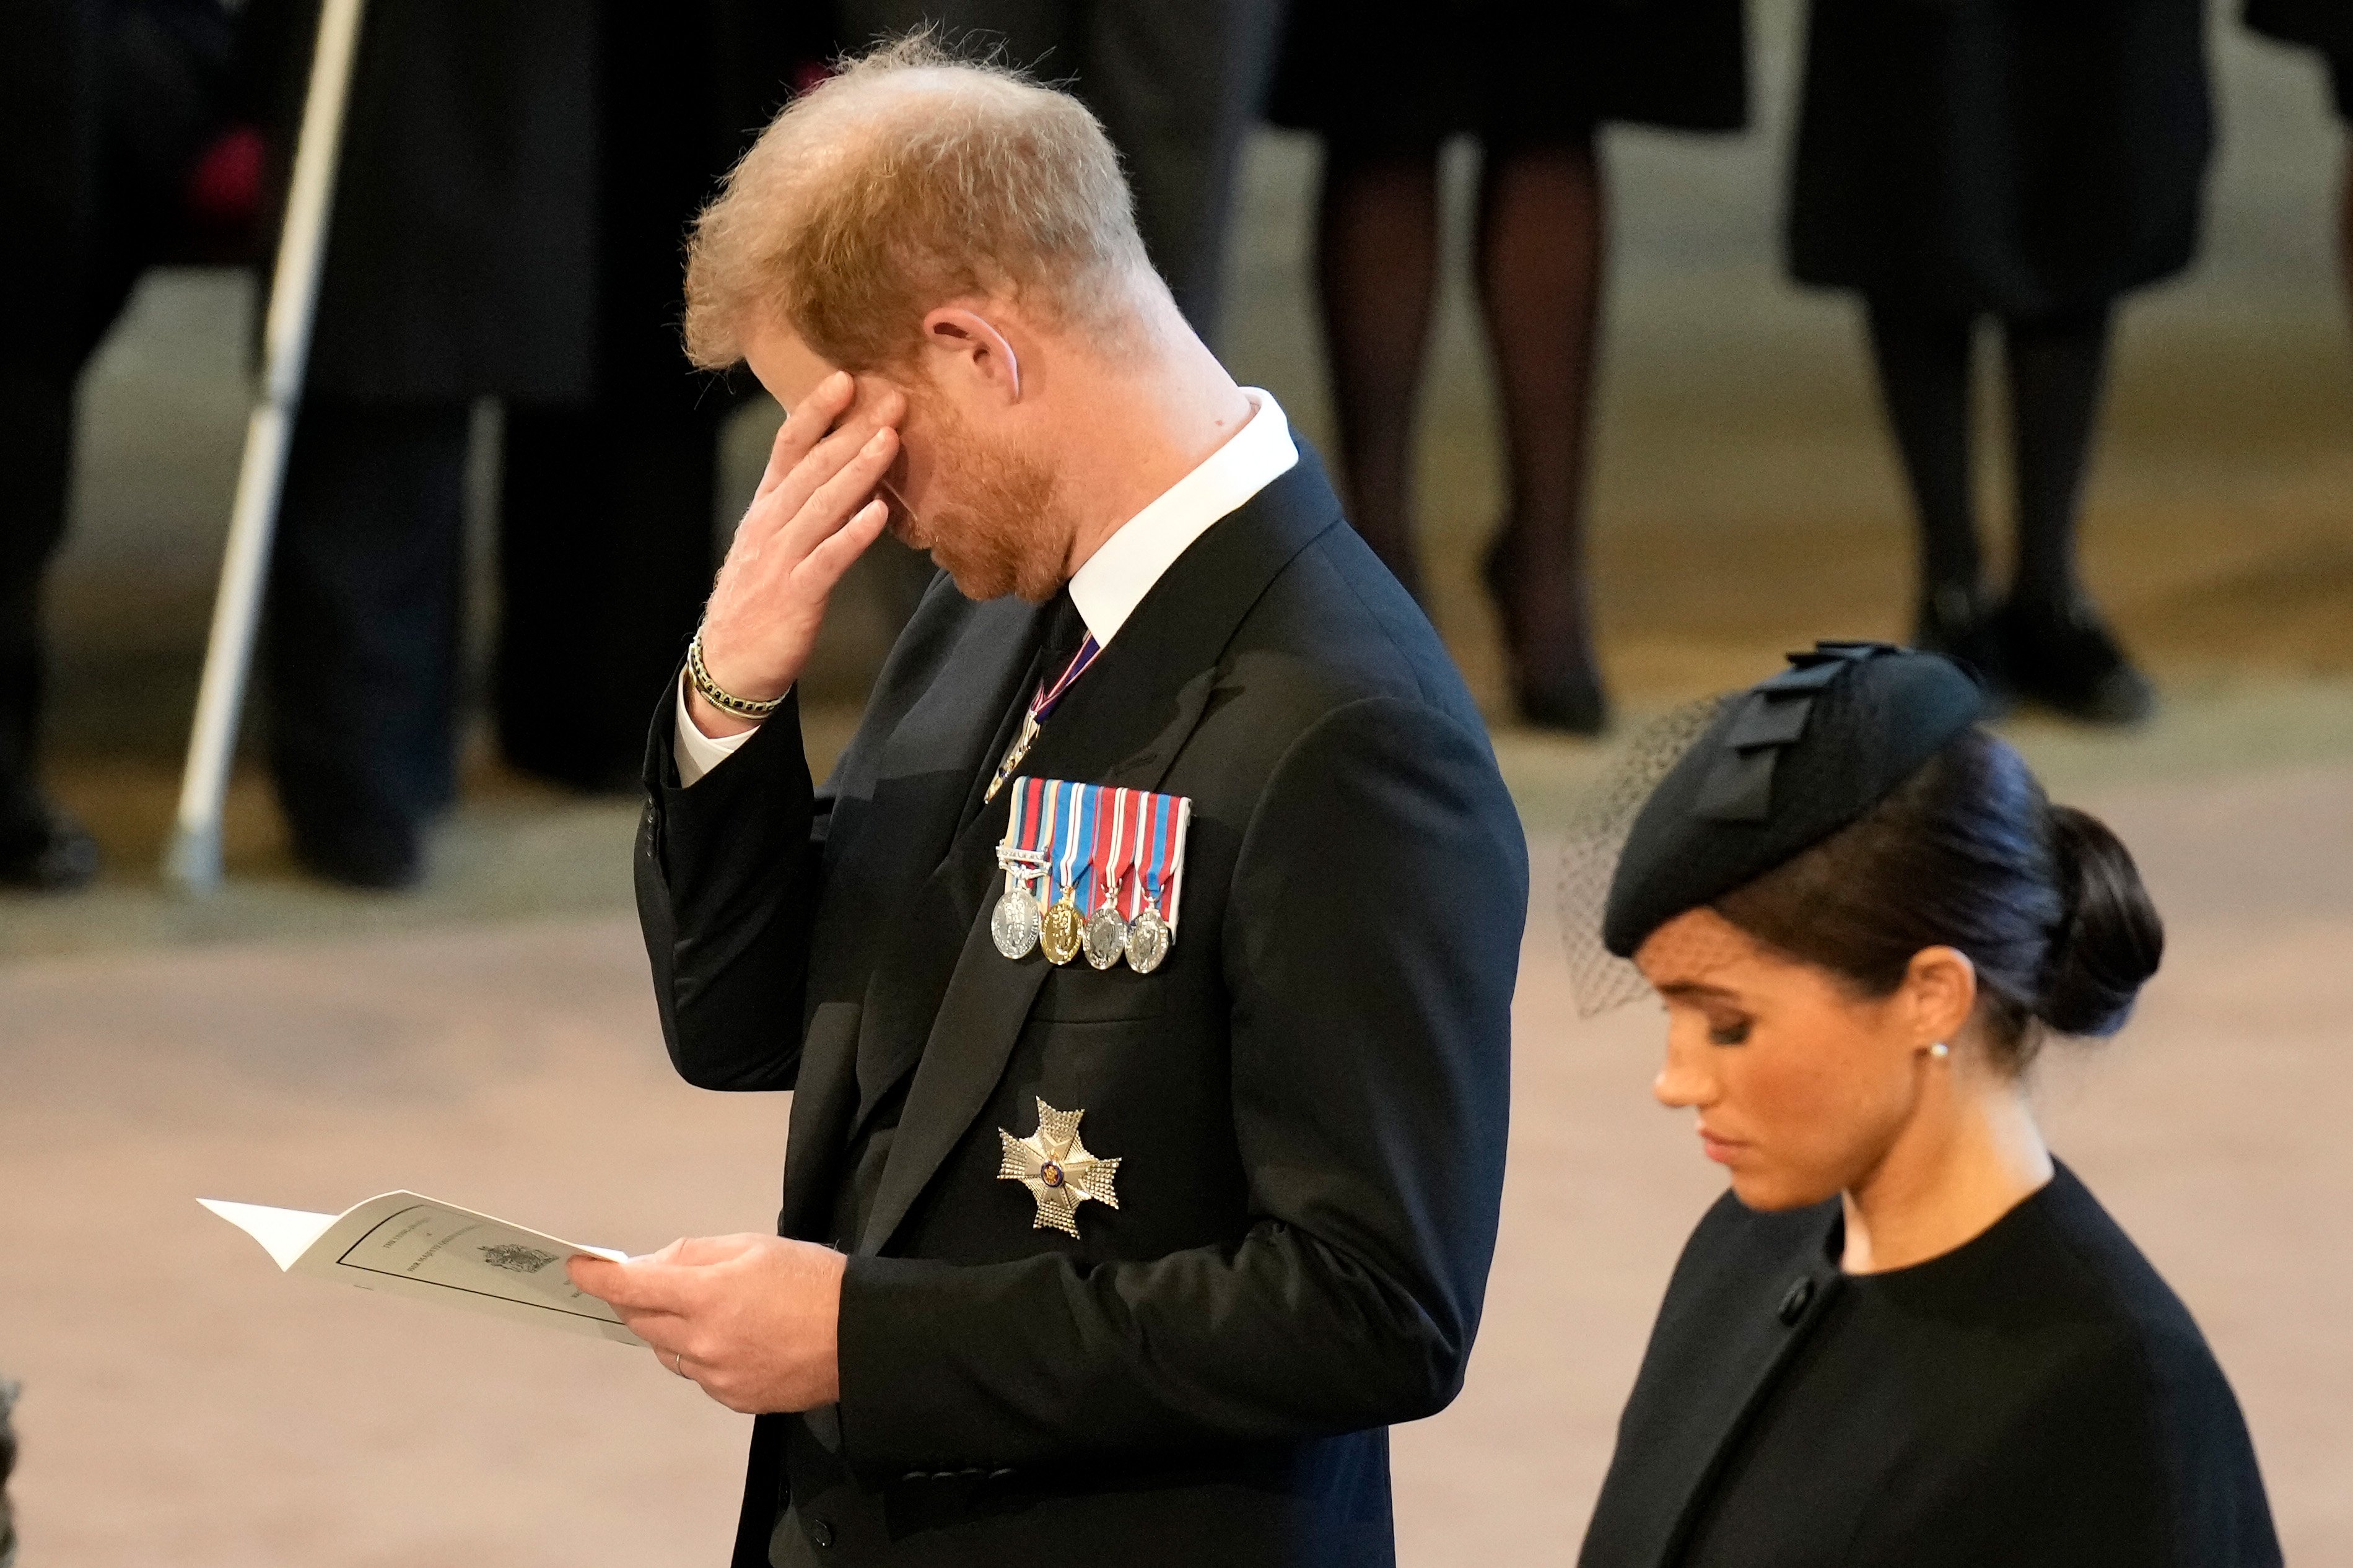 El príncipe Harry y Meghan Markle presentando sus respetos en el palacio de Westminster después de la procesión de estado de la reina Elizabeth II, el 14 de septiembre de 2022 en Londres, Inglaterra. | Foto: Getty Images